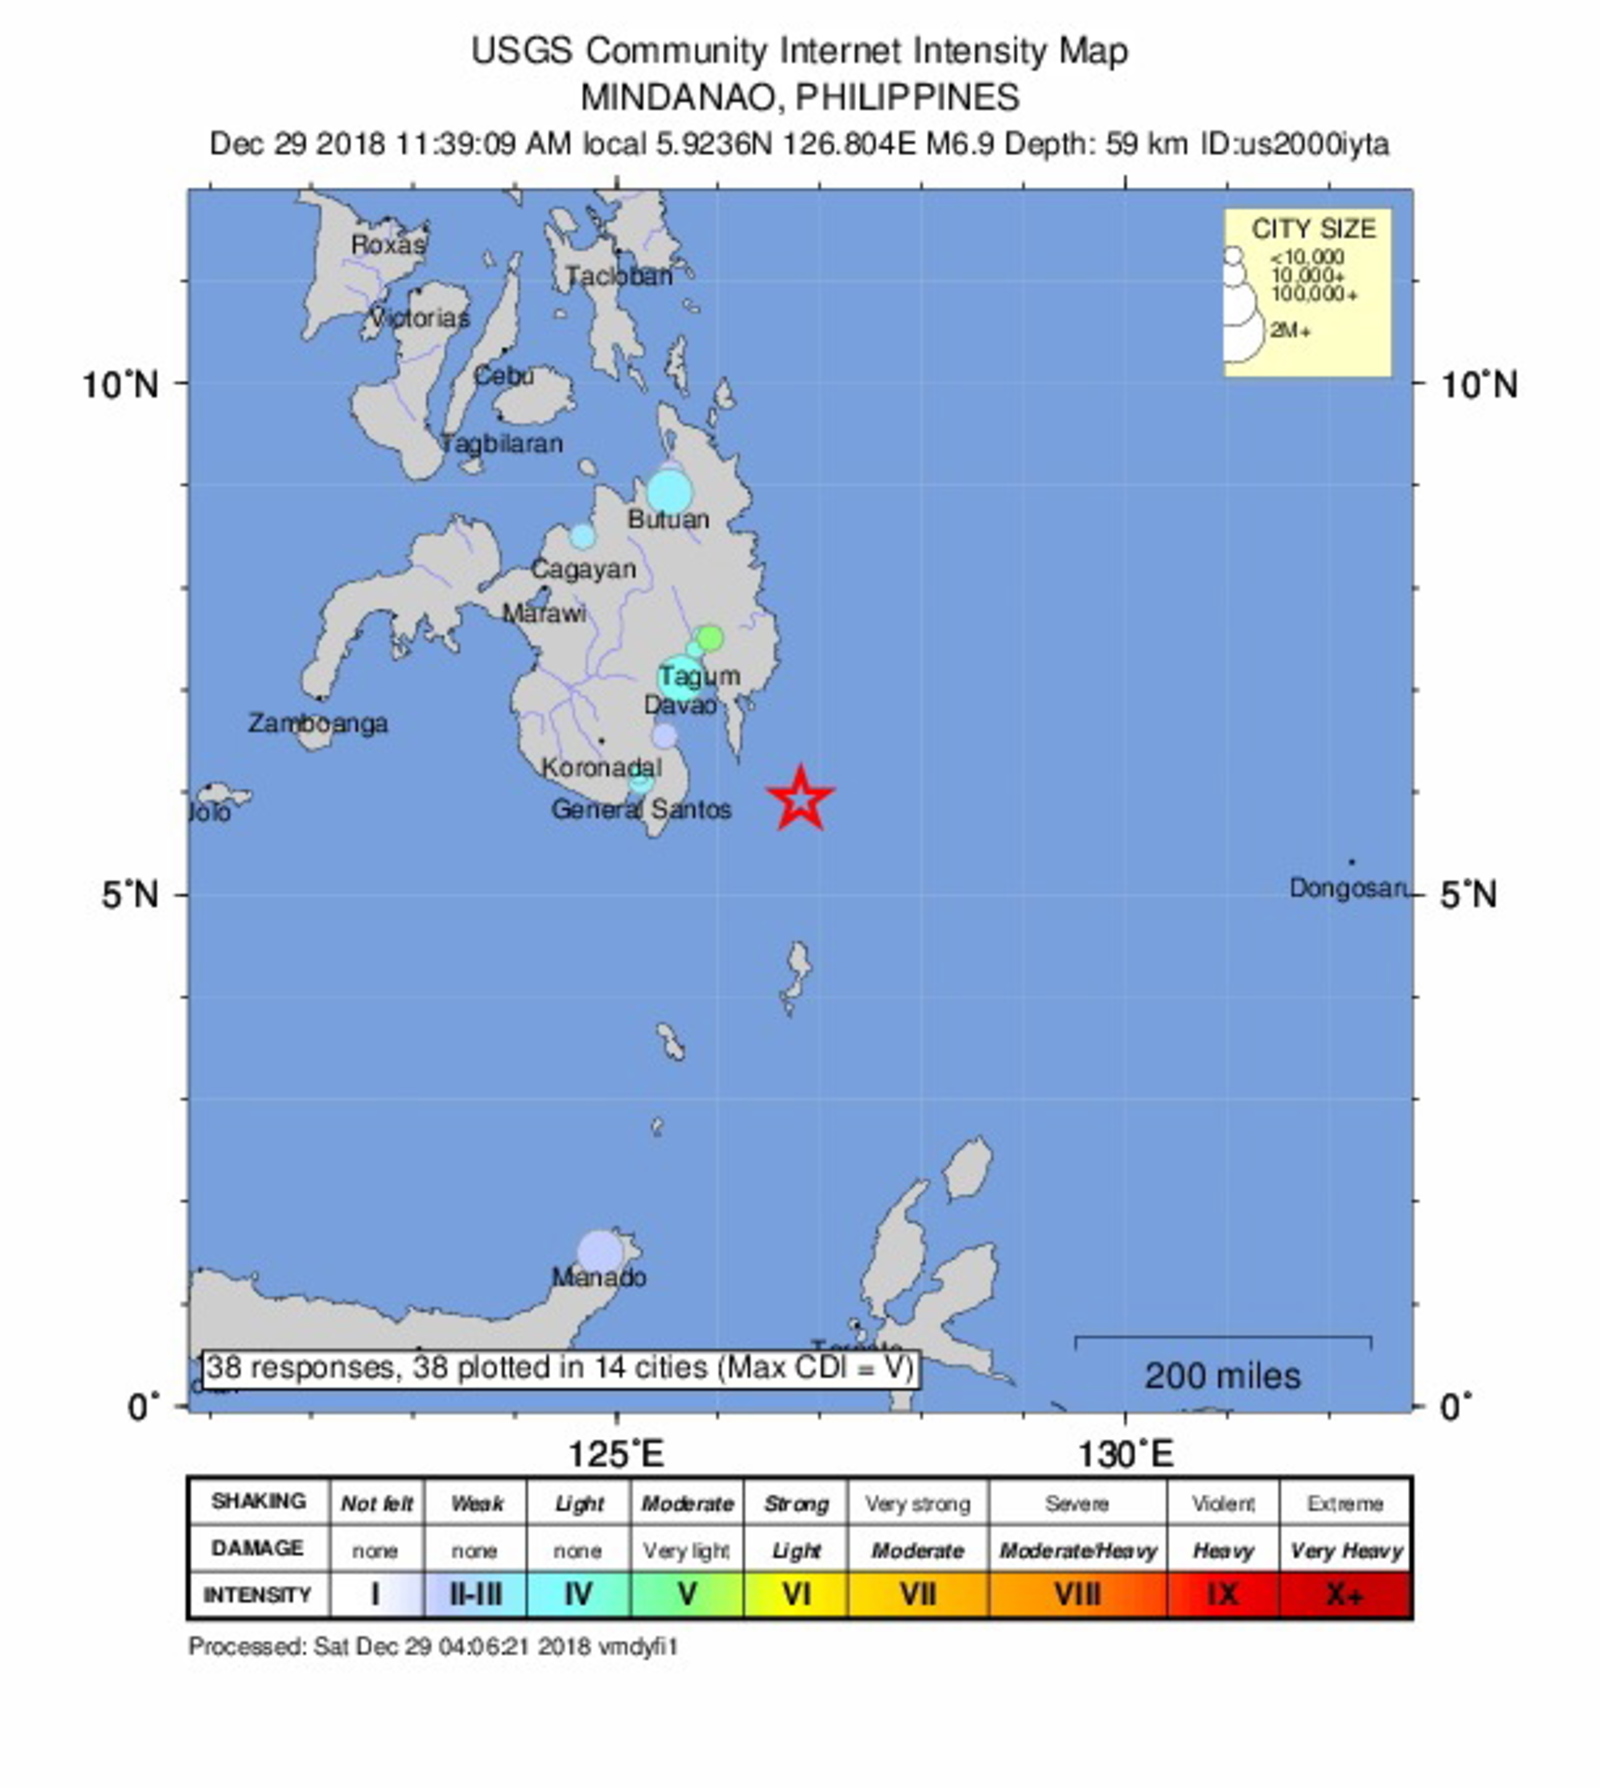 Uno más. La agencia sismológica de Filipinas elevó la magnitud a 7.2 según sus registros.